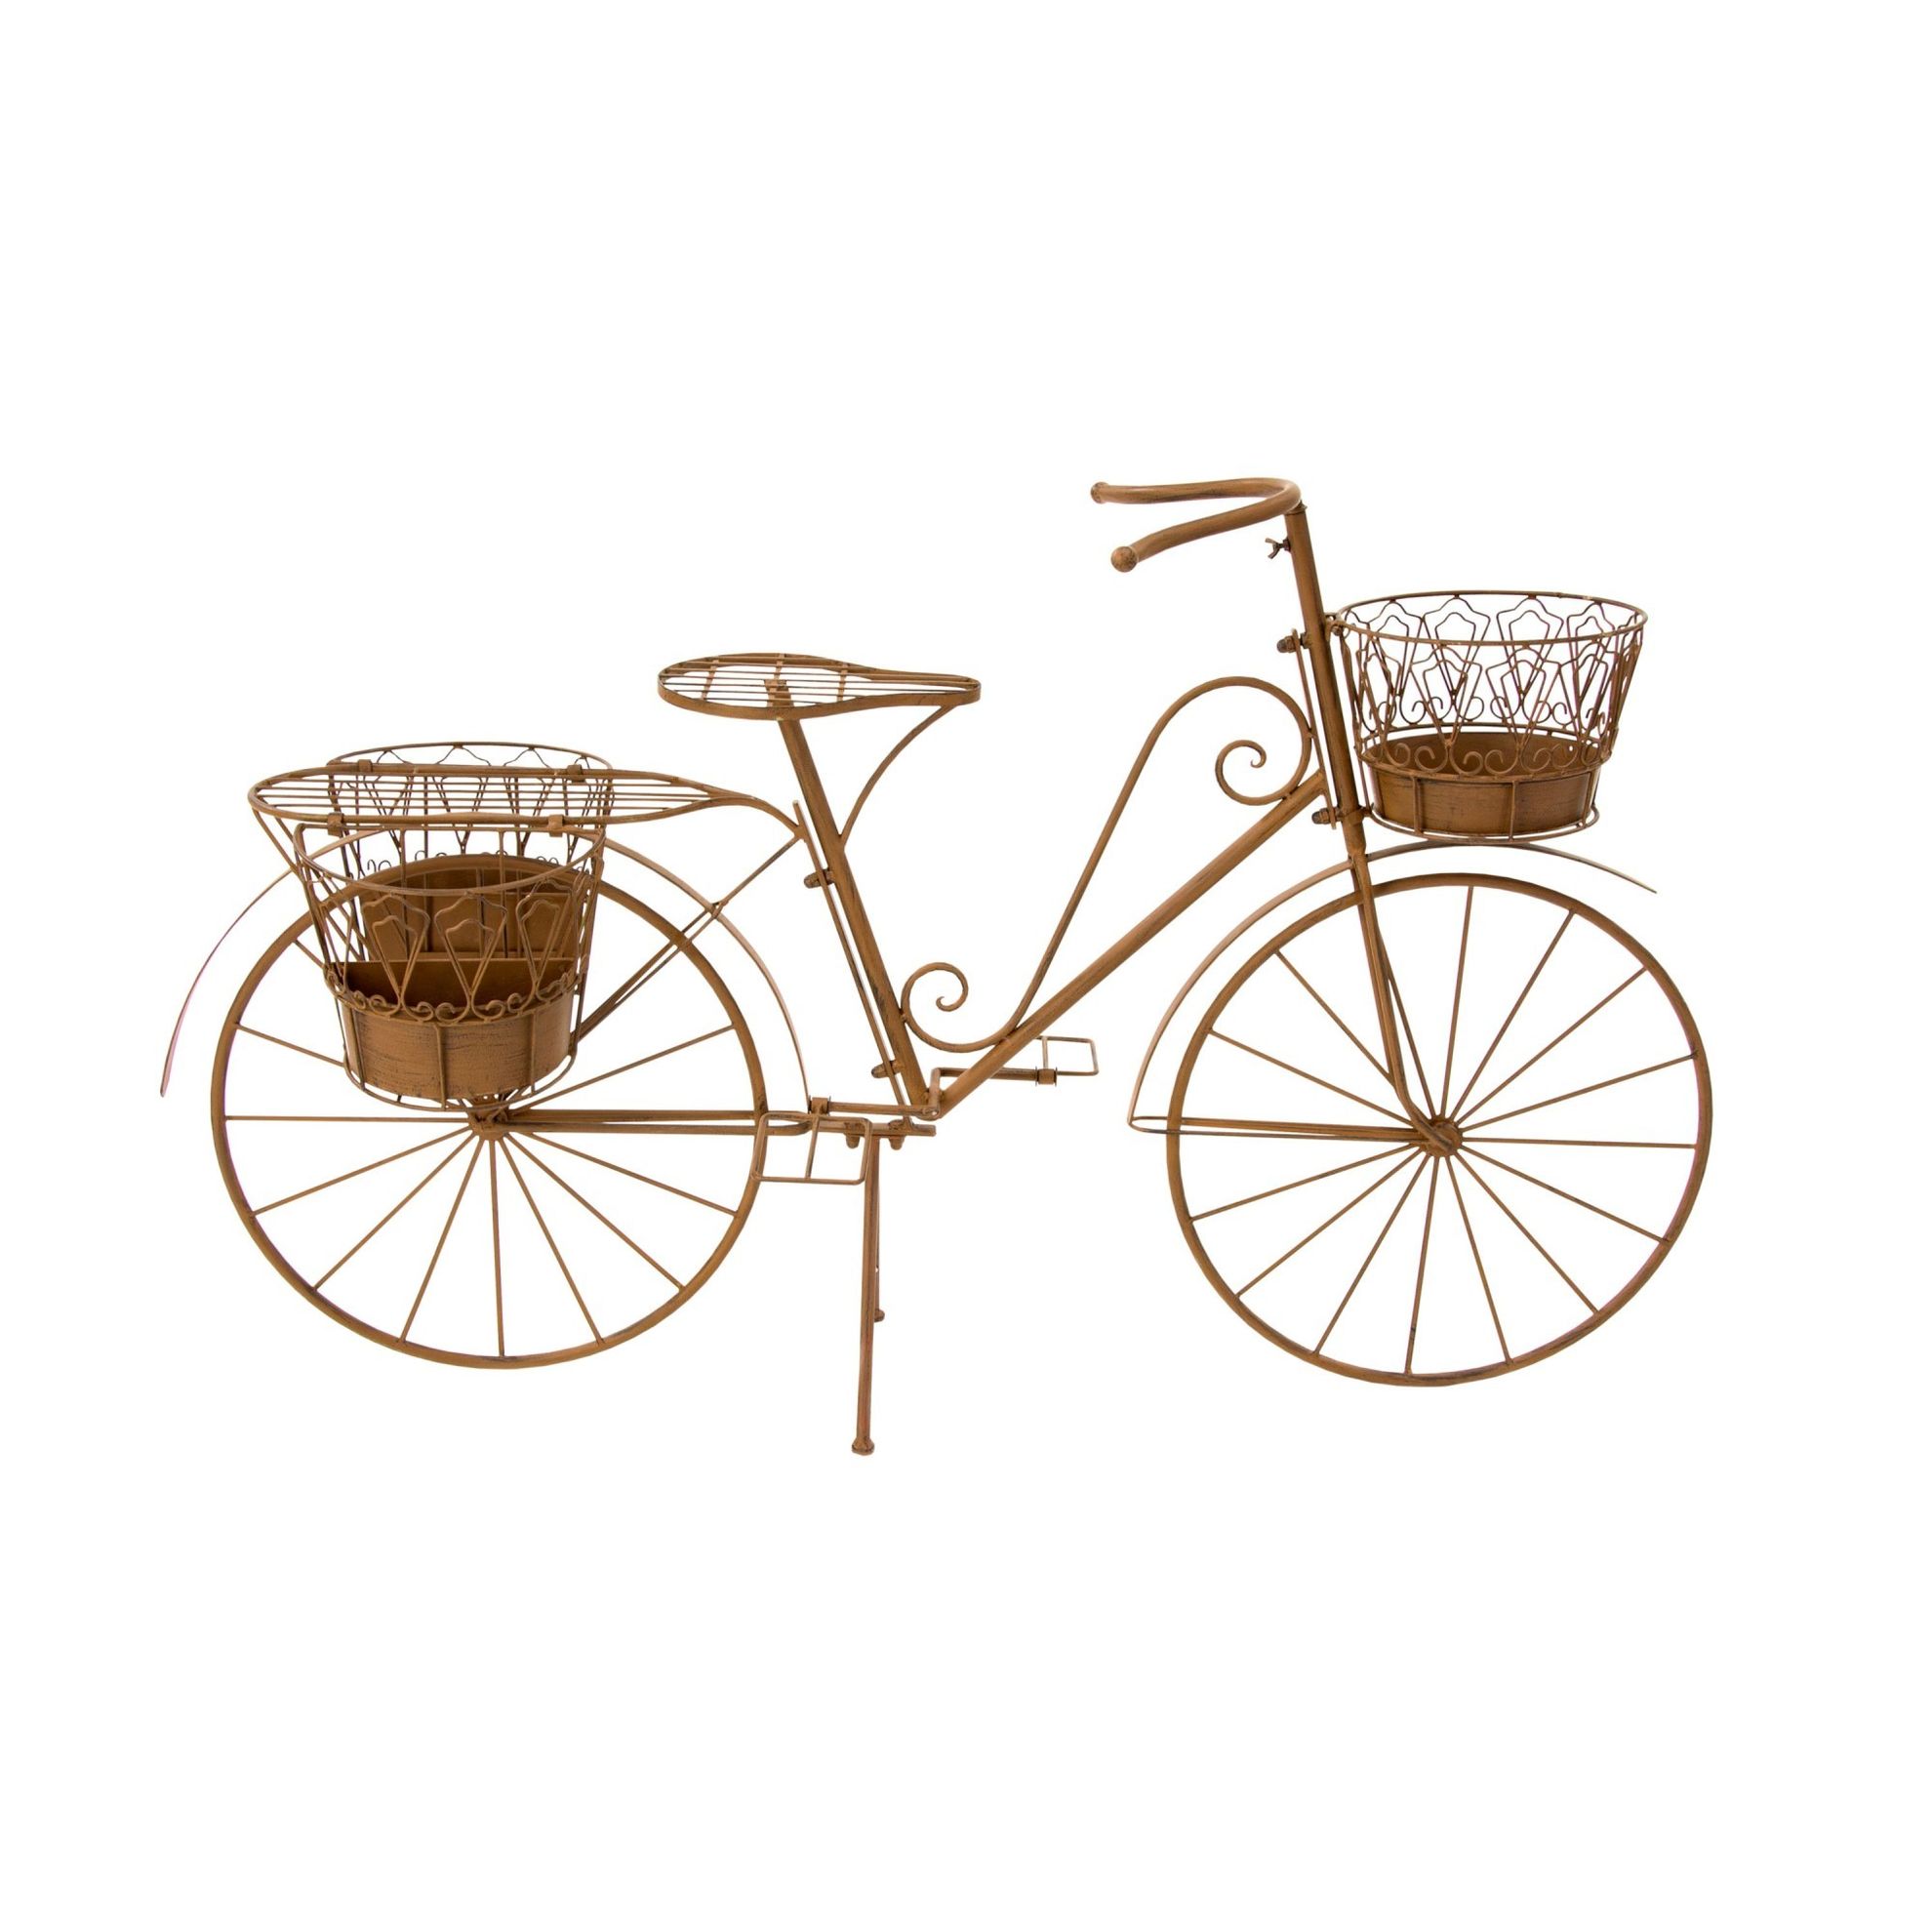 Deko-Fahrrad mit Pflanzhalter Rusty bestellen | Weltbild.ch